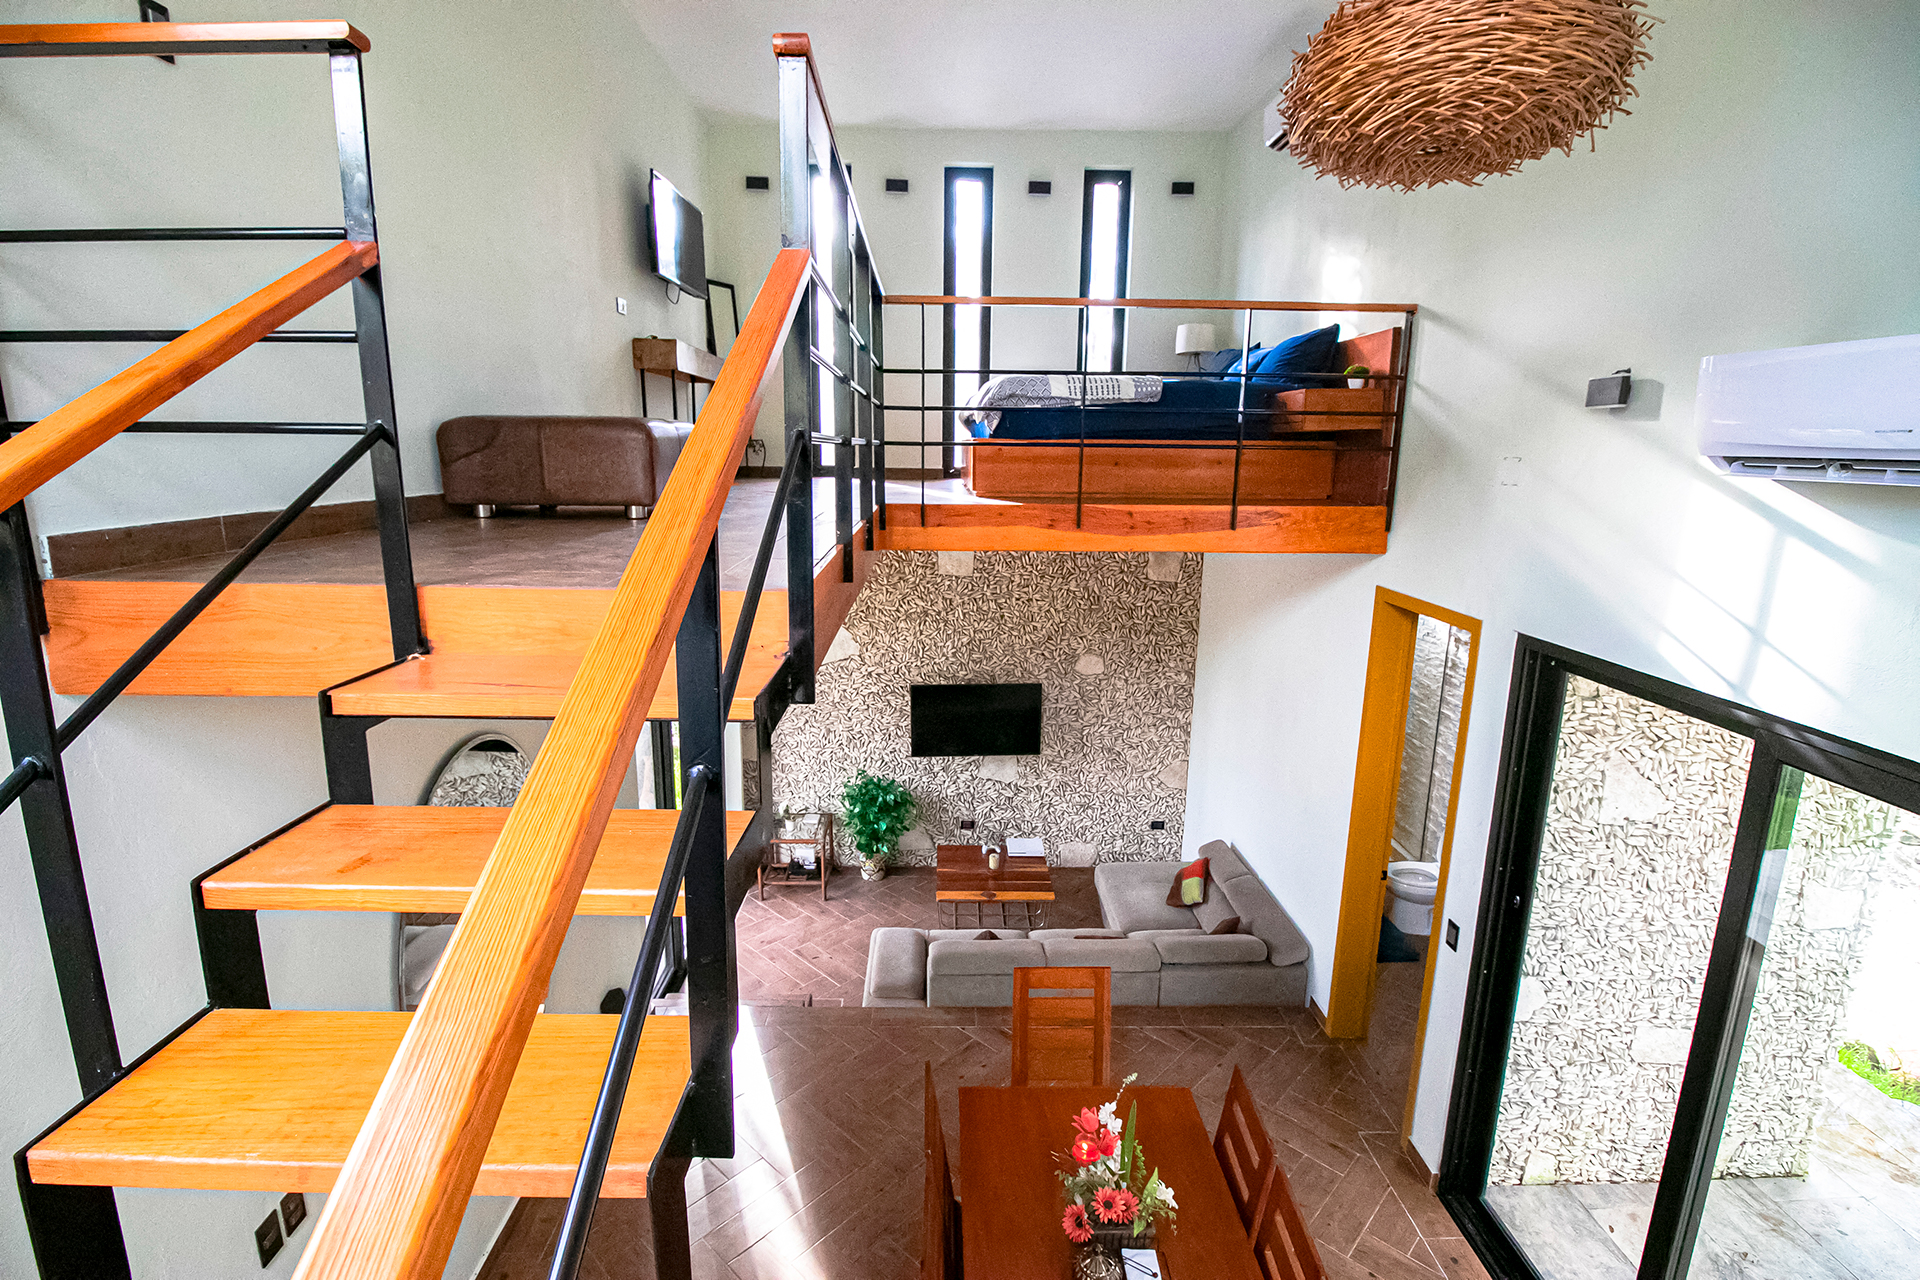 Villas Cozumel - Villa Violeta, lugar de hospedaje en Cozumel, escaleras, habitación, cama king size, tv, Cozumel